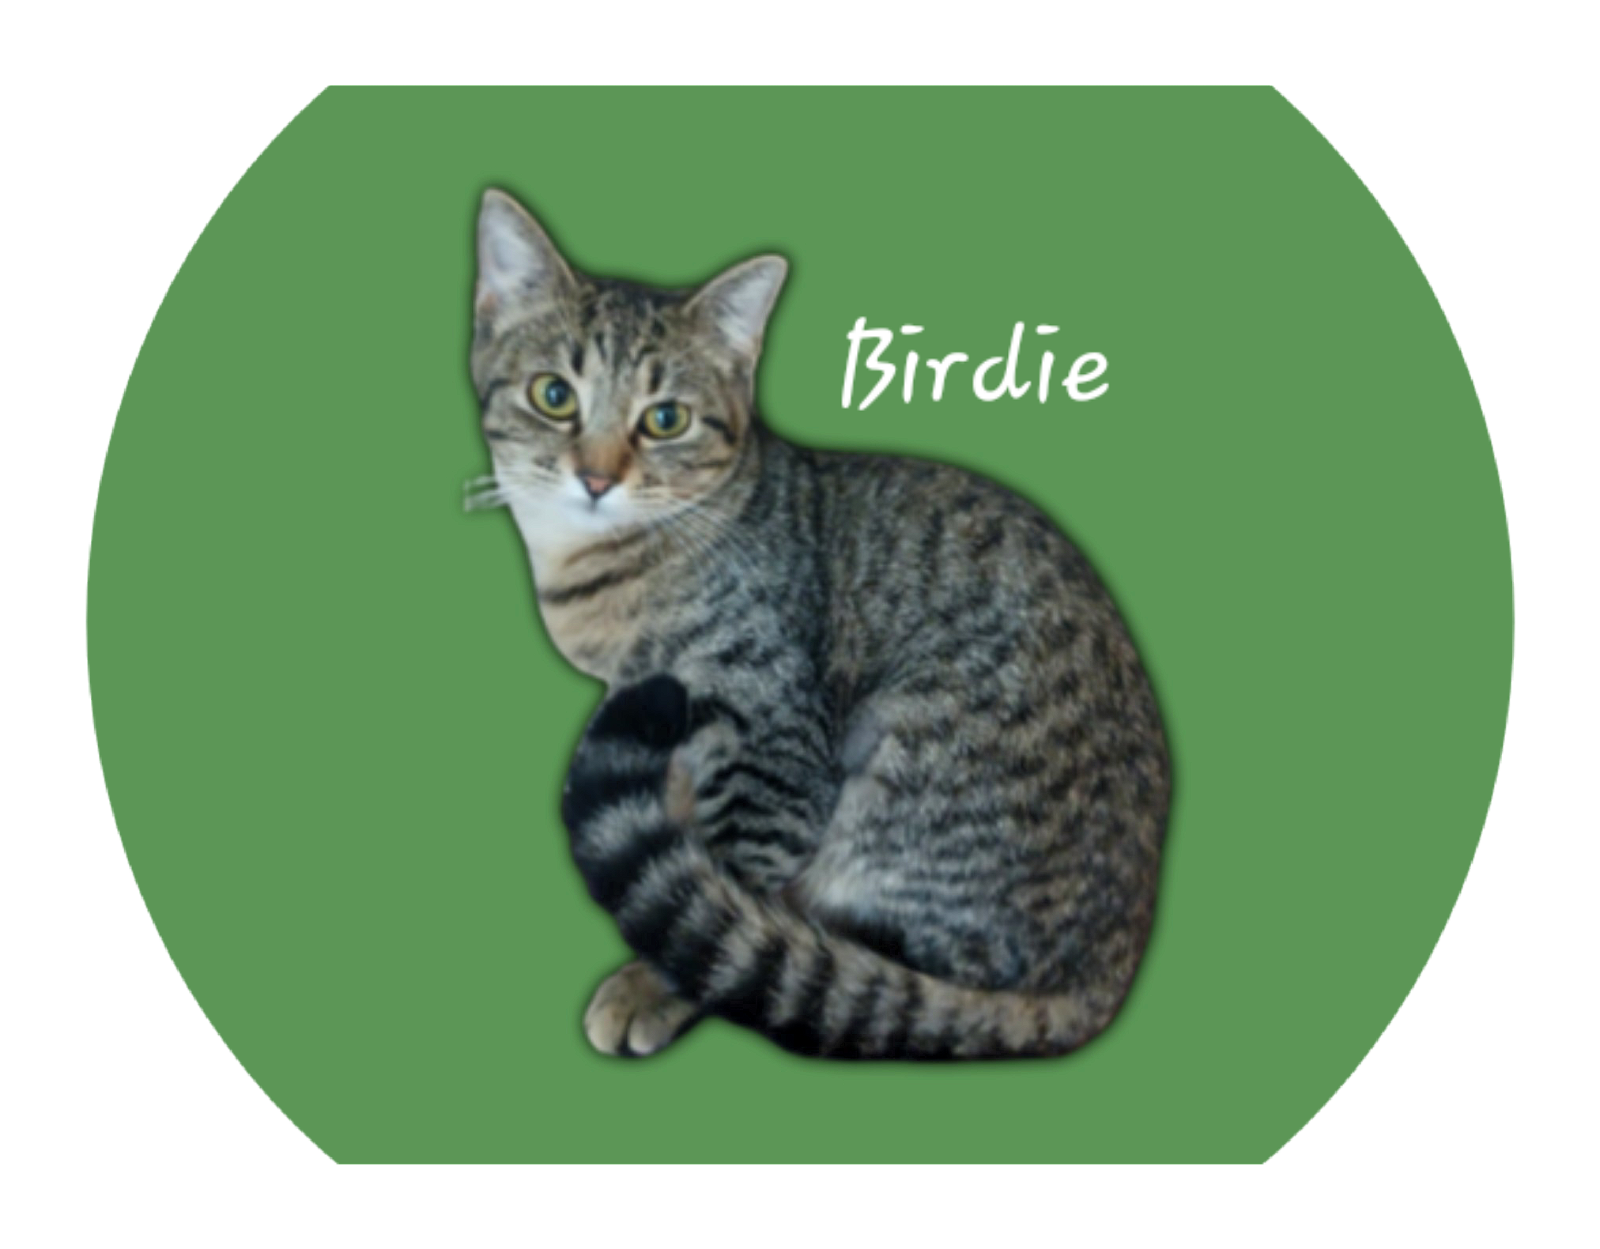 adoptable Cat in Sugar Land, TX named Birdie #chirper